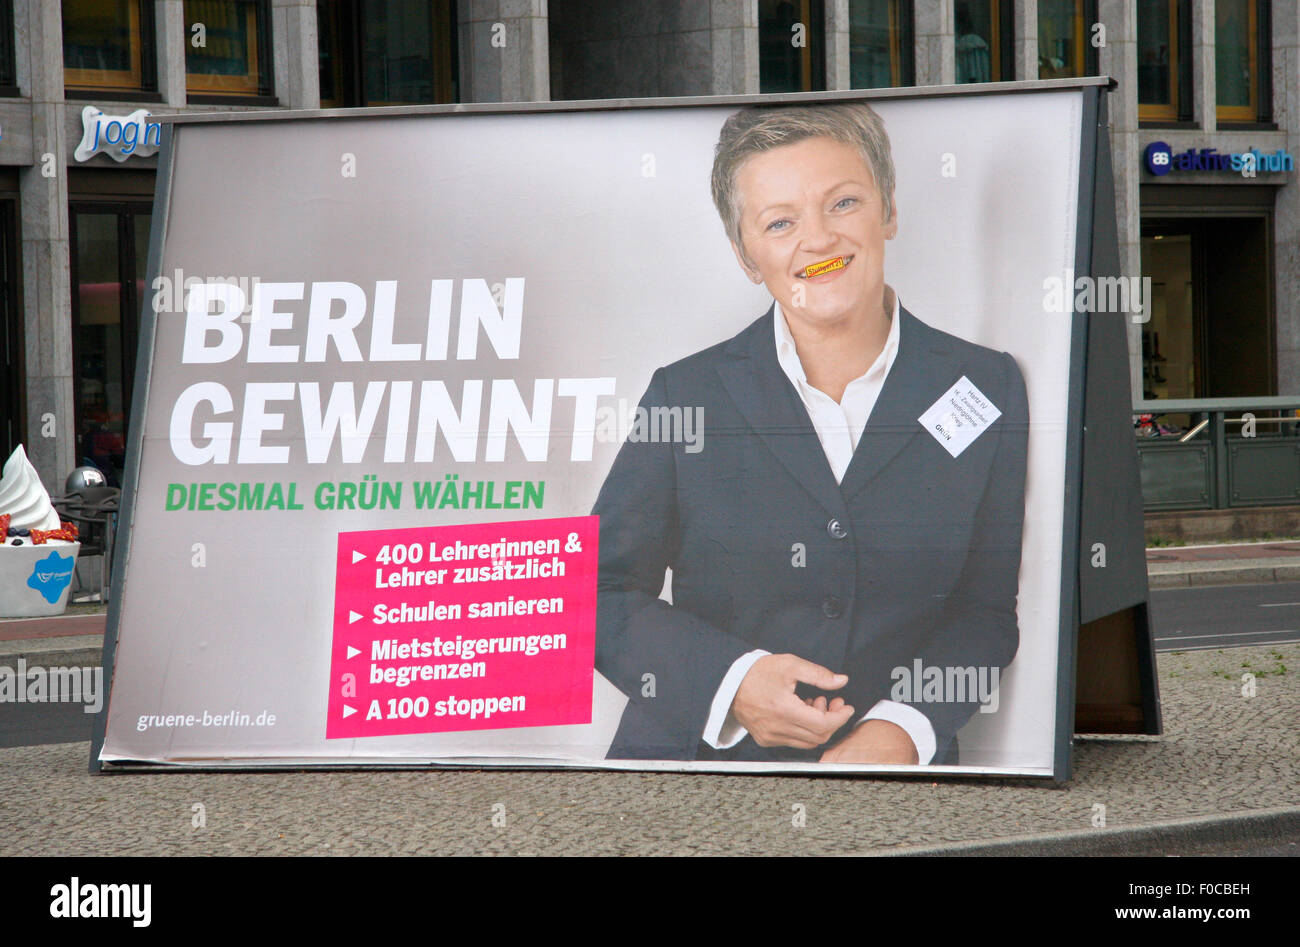 Wahlkampf in Berlin: Wahlplakat Renate Kuenast, September 2011. Stock Photo